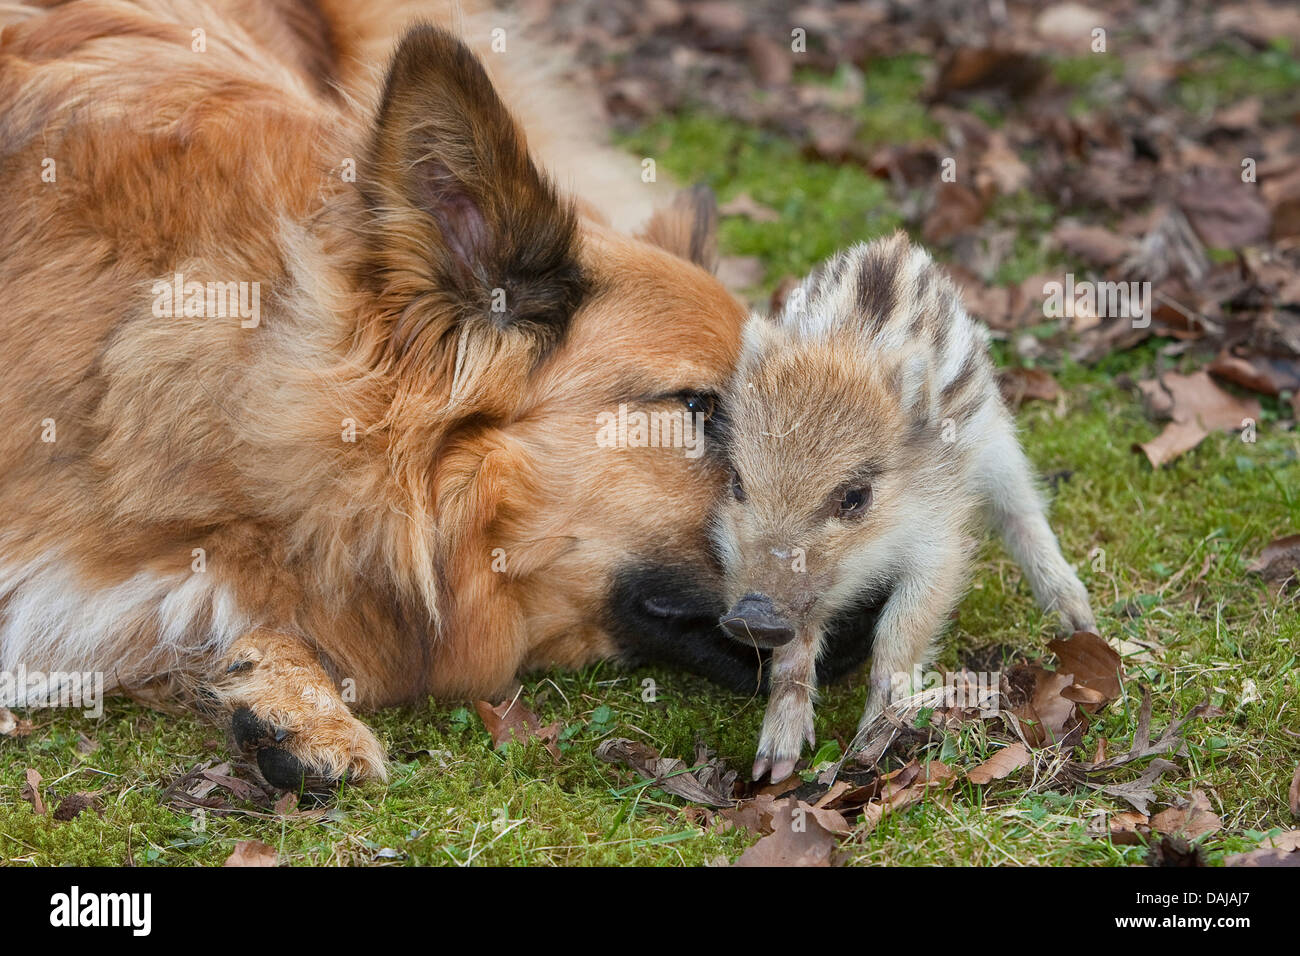 Il cinghiale, maiale, il cinghiale (Sus scrofa), dolce animale giovane giocando con un cane in giardino, Germania Foto Stock